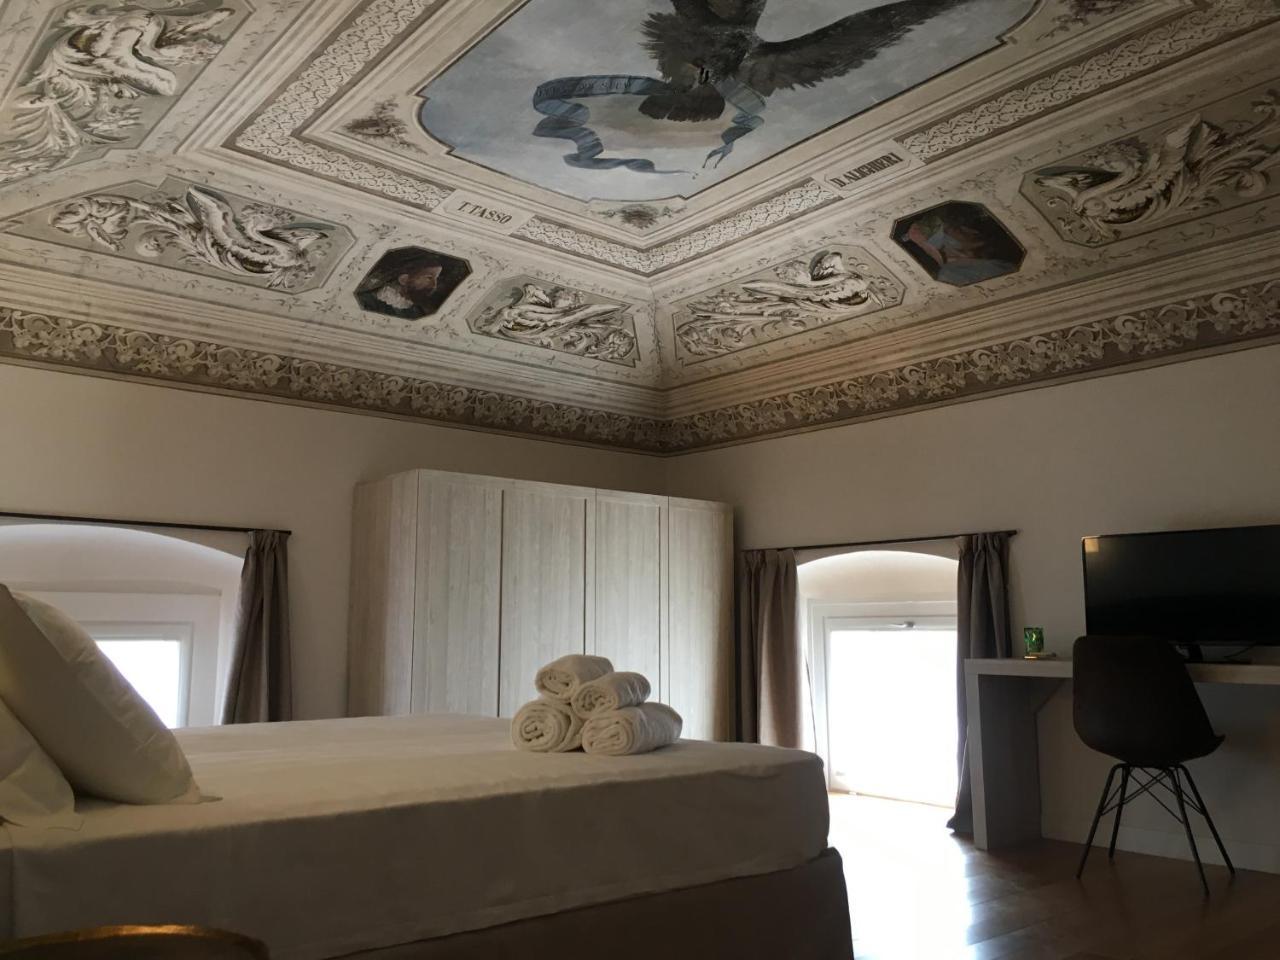 Hotel Palazzo Vannoni 레반토 외부 사진